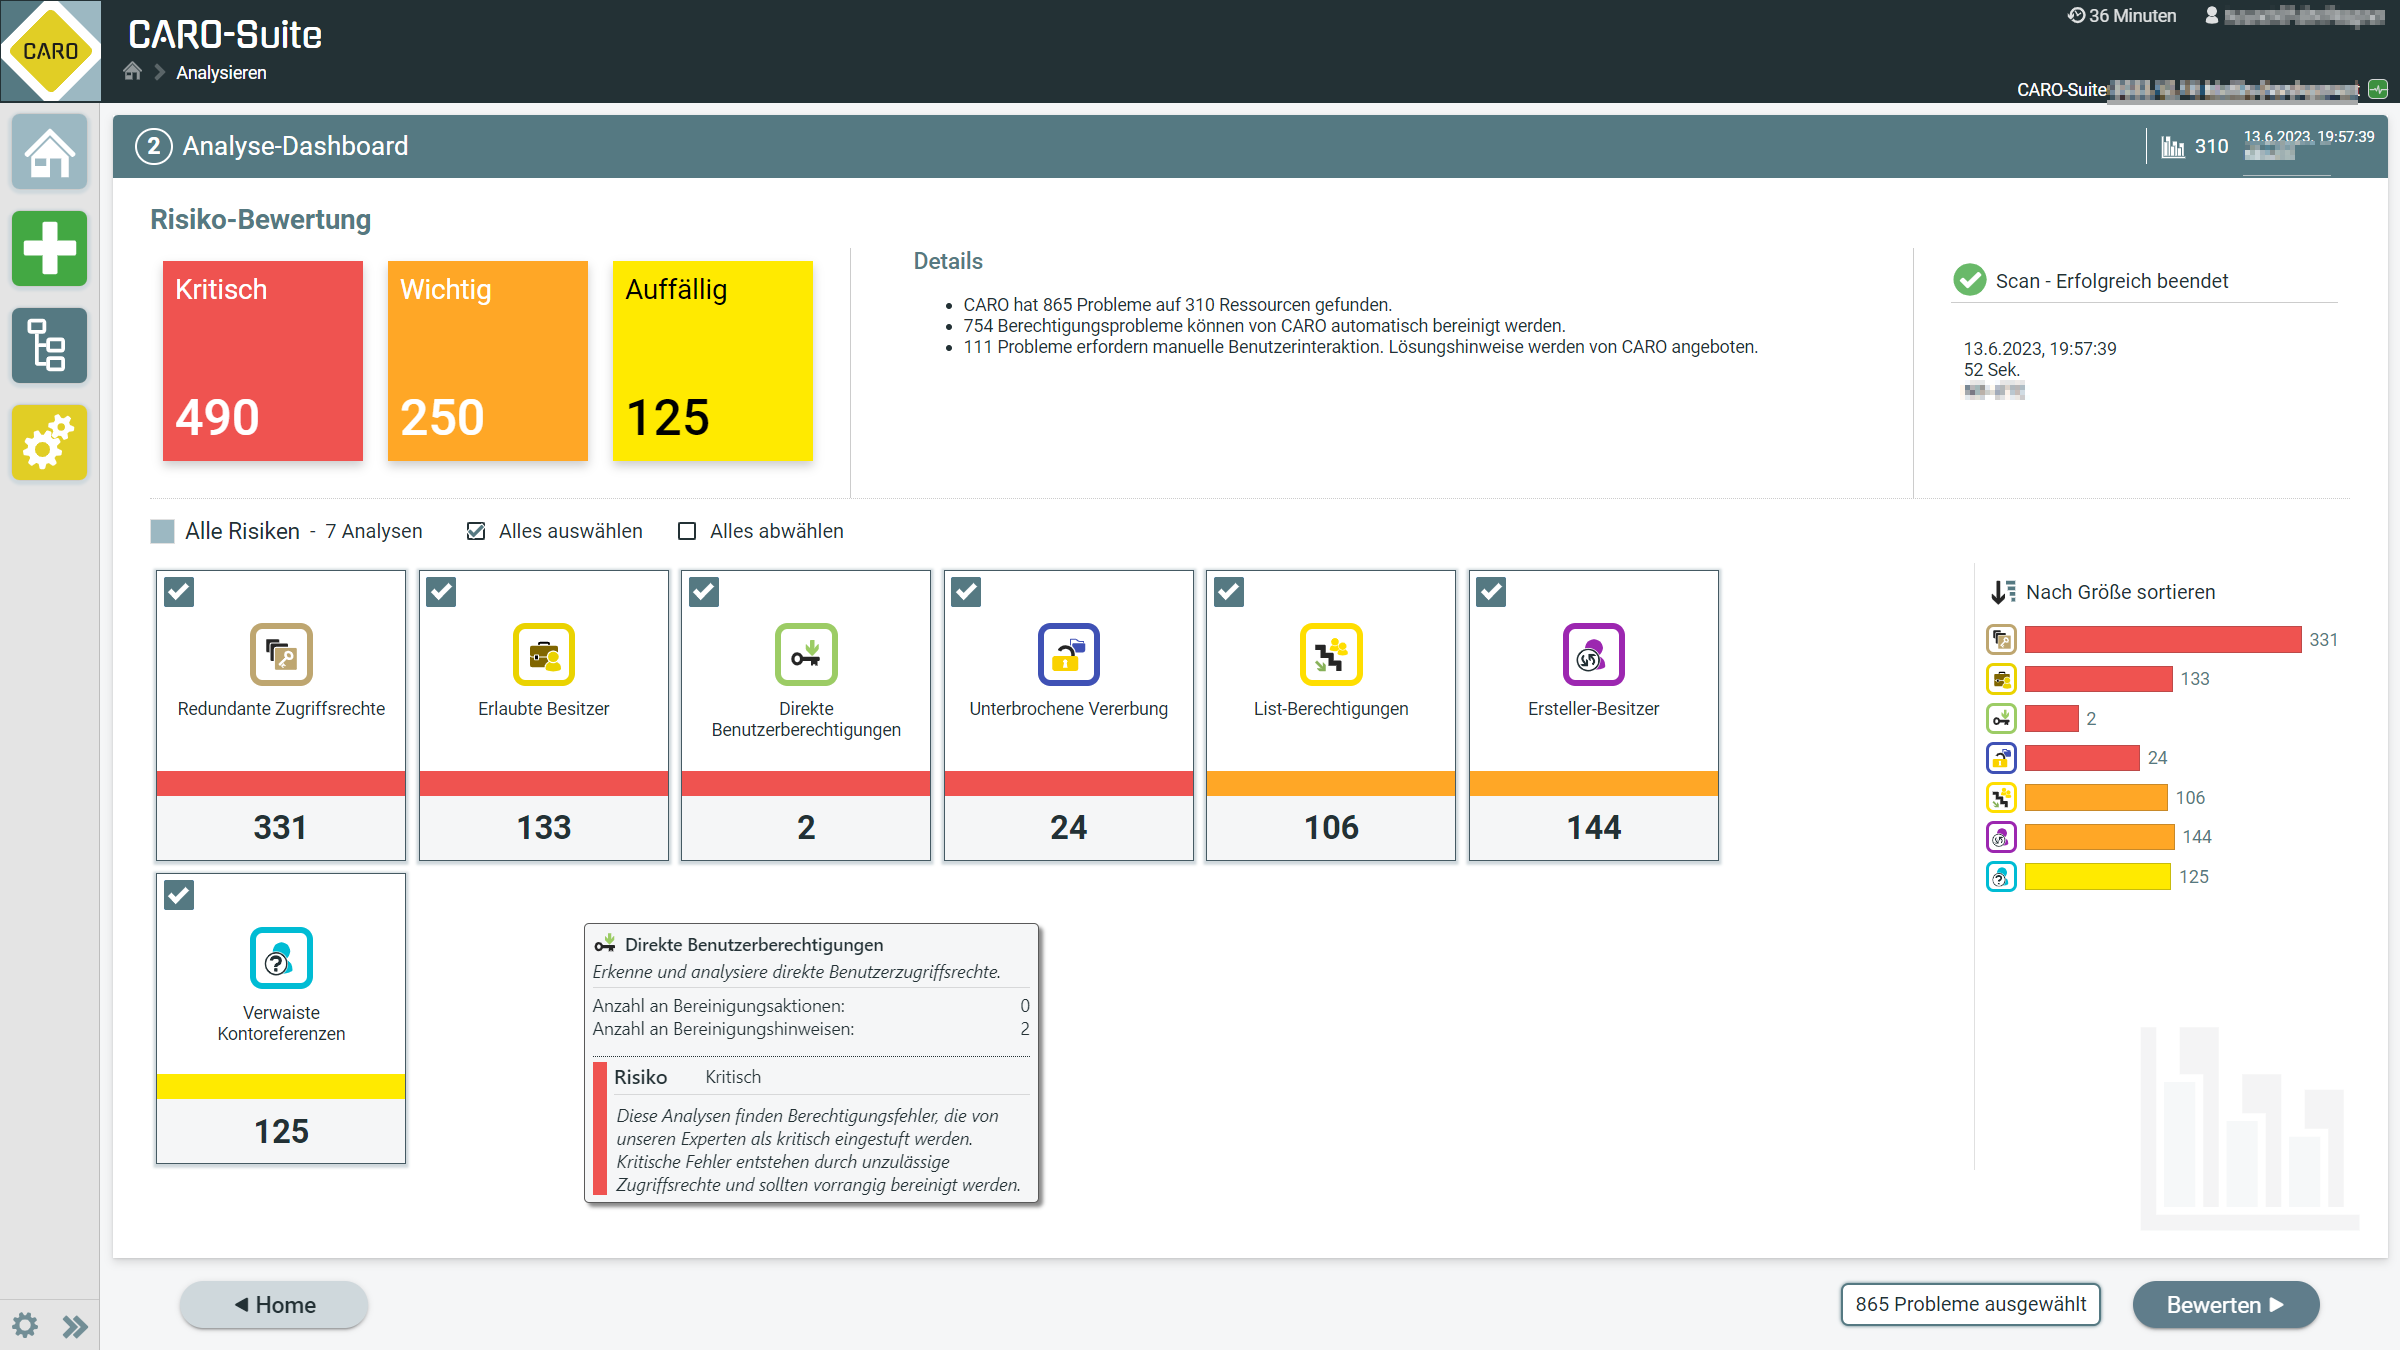 Analyse-Dashboard mit Risikobewertung in der CARO-Suite